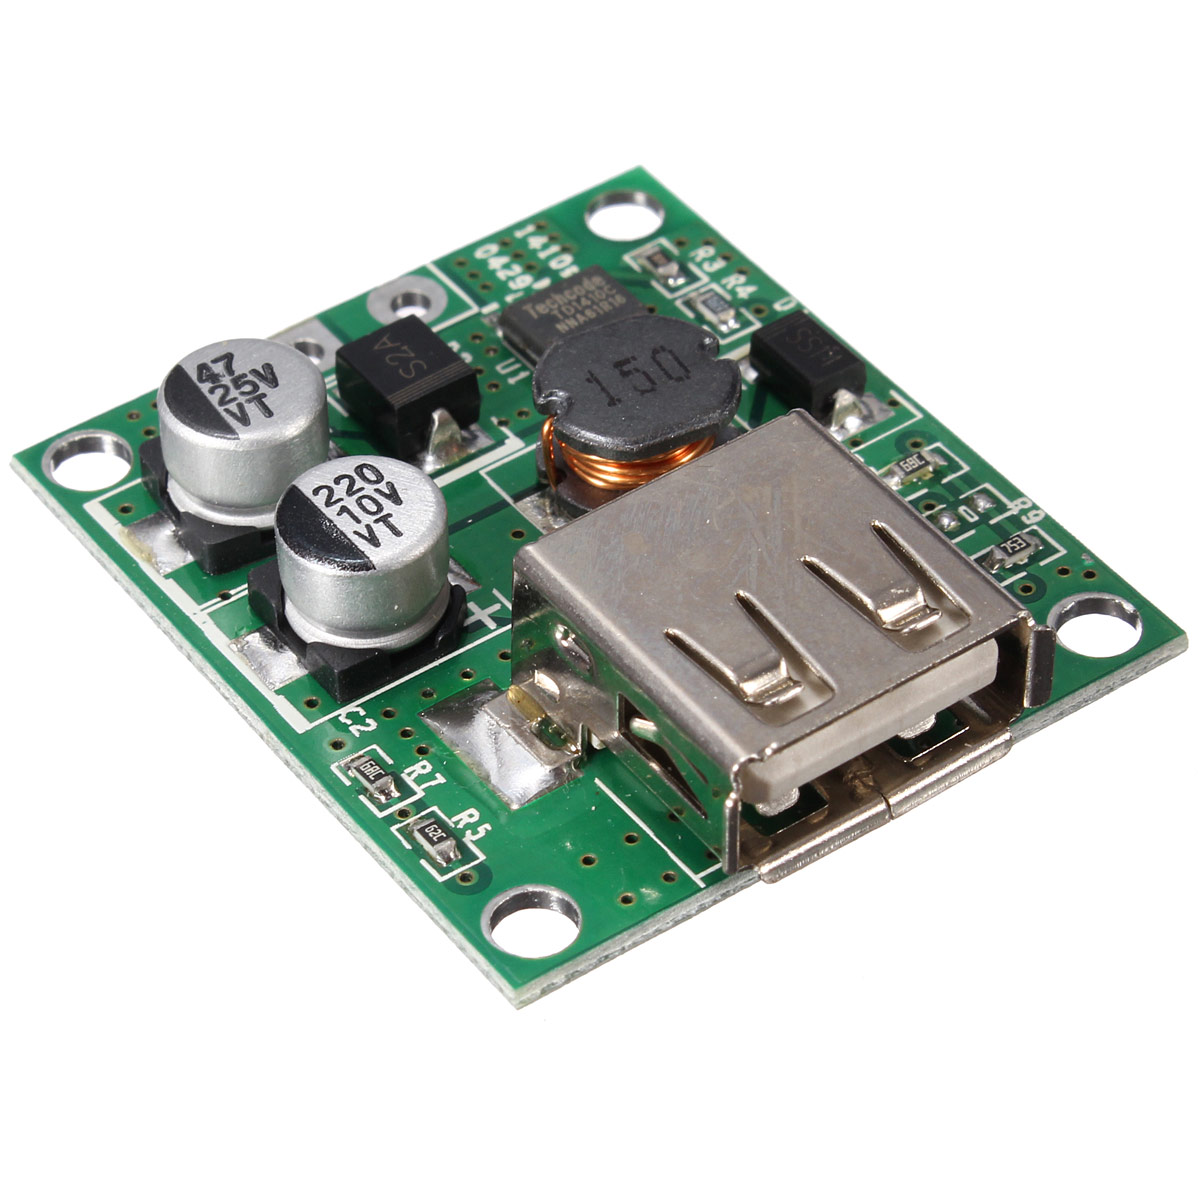 5V 2A Solar Panel Power Bank USB Charge Voltage Controller Regulator Module 6V 20V Input For